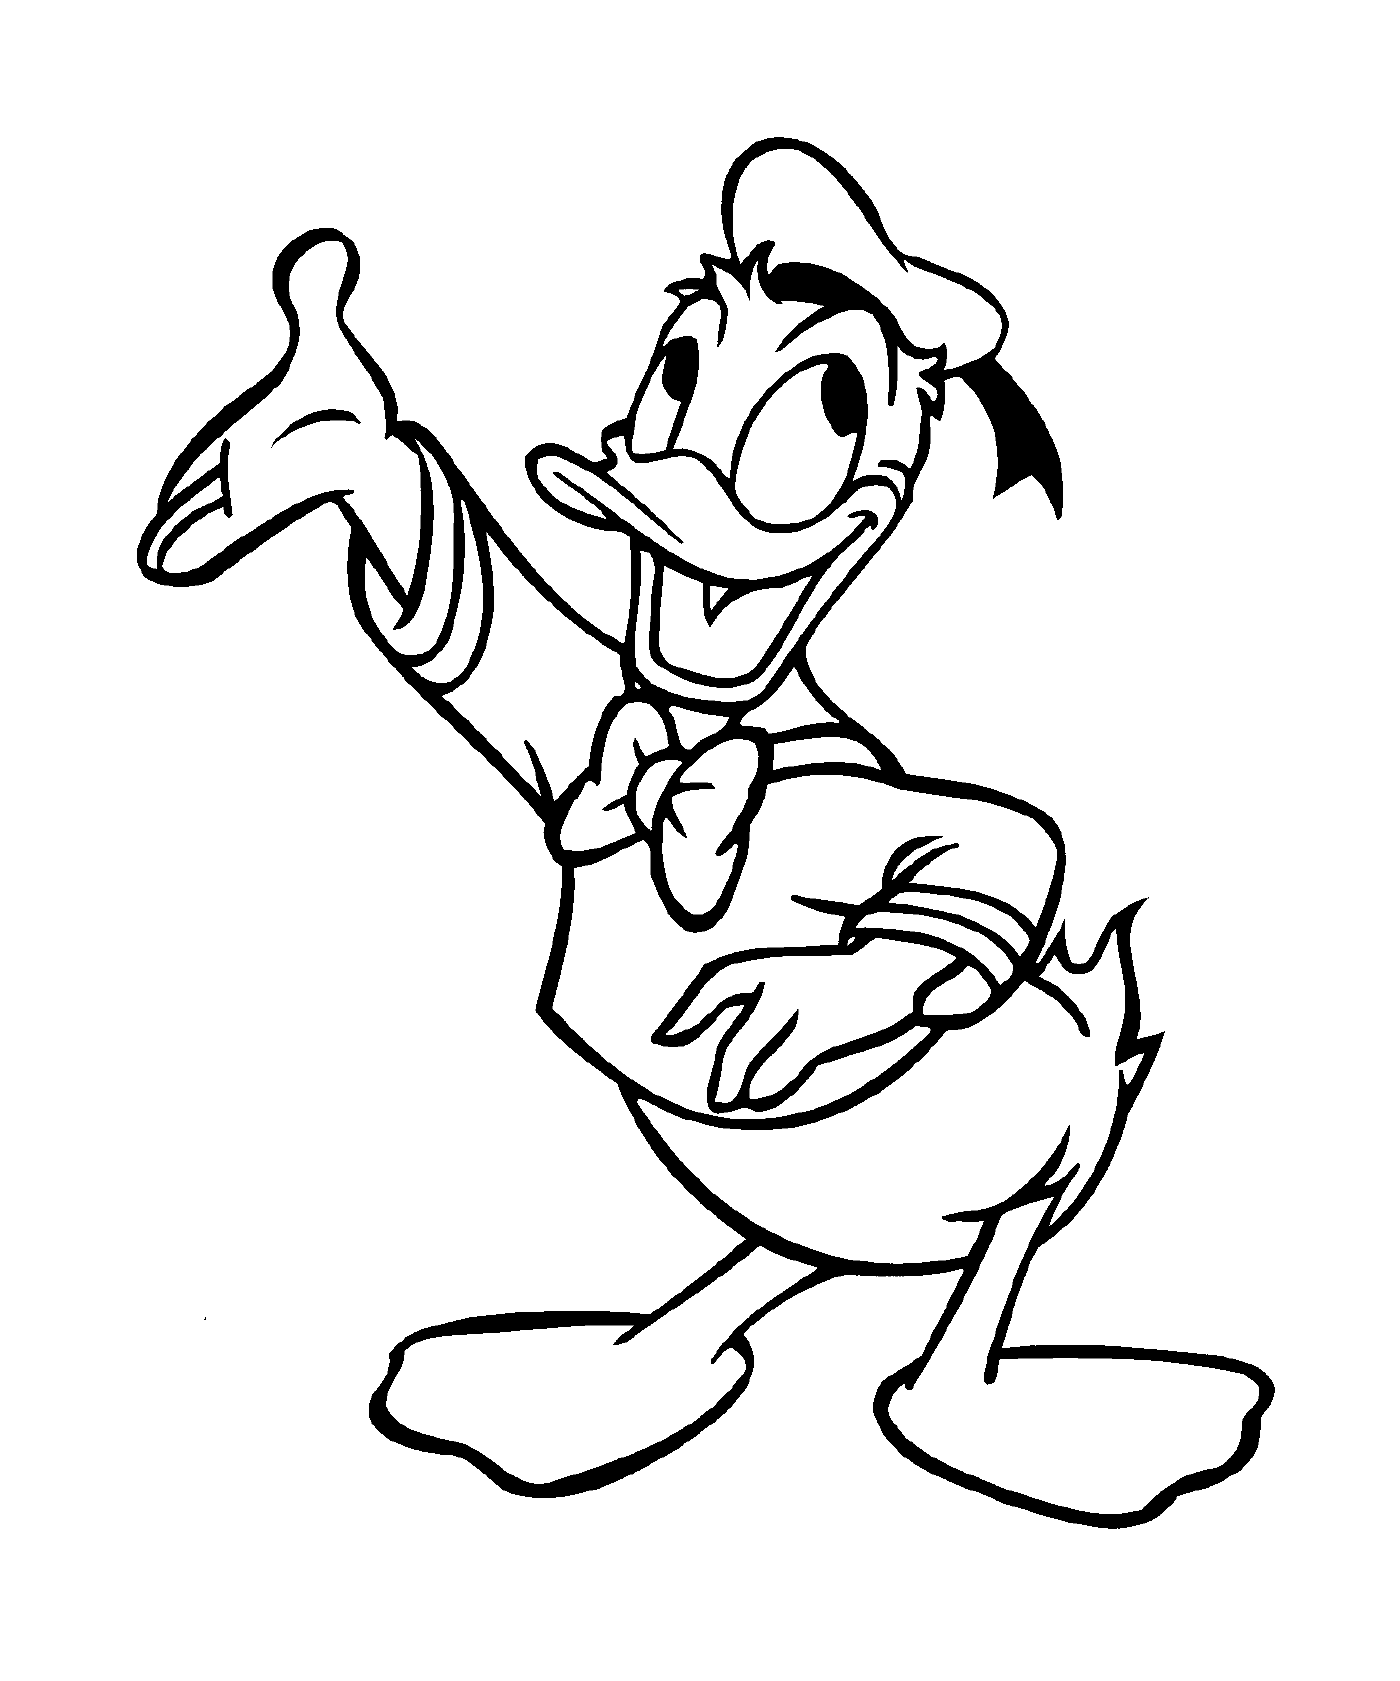  Donald Duck von Dick Lundy 